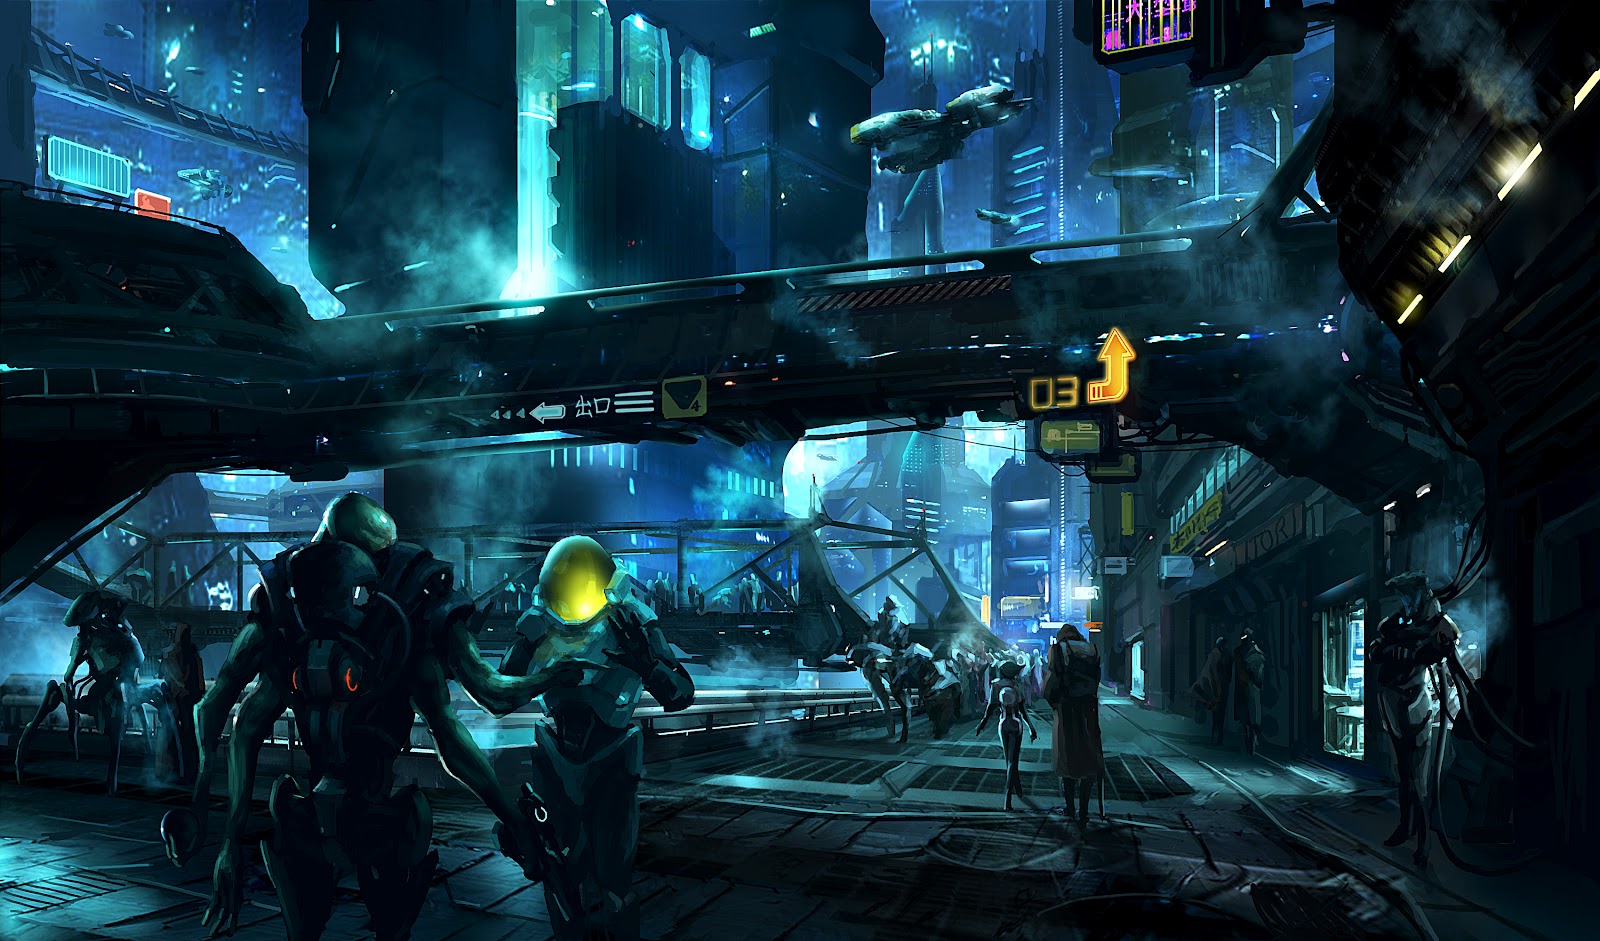 Игры будущего зал. Sci-Fi Art город киберпанк. Cyberpunk Concept Art город. Sci Fi Cyberpunk улица арт. Киберпанк концепт арт окружения.